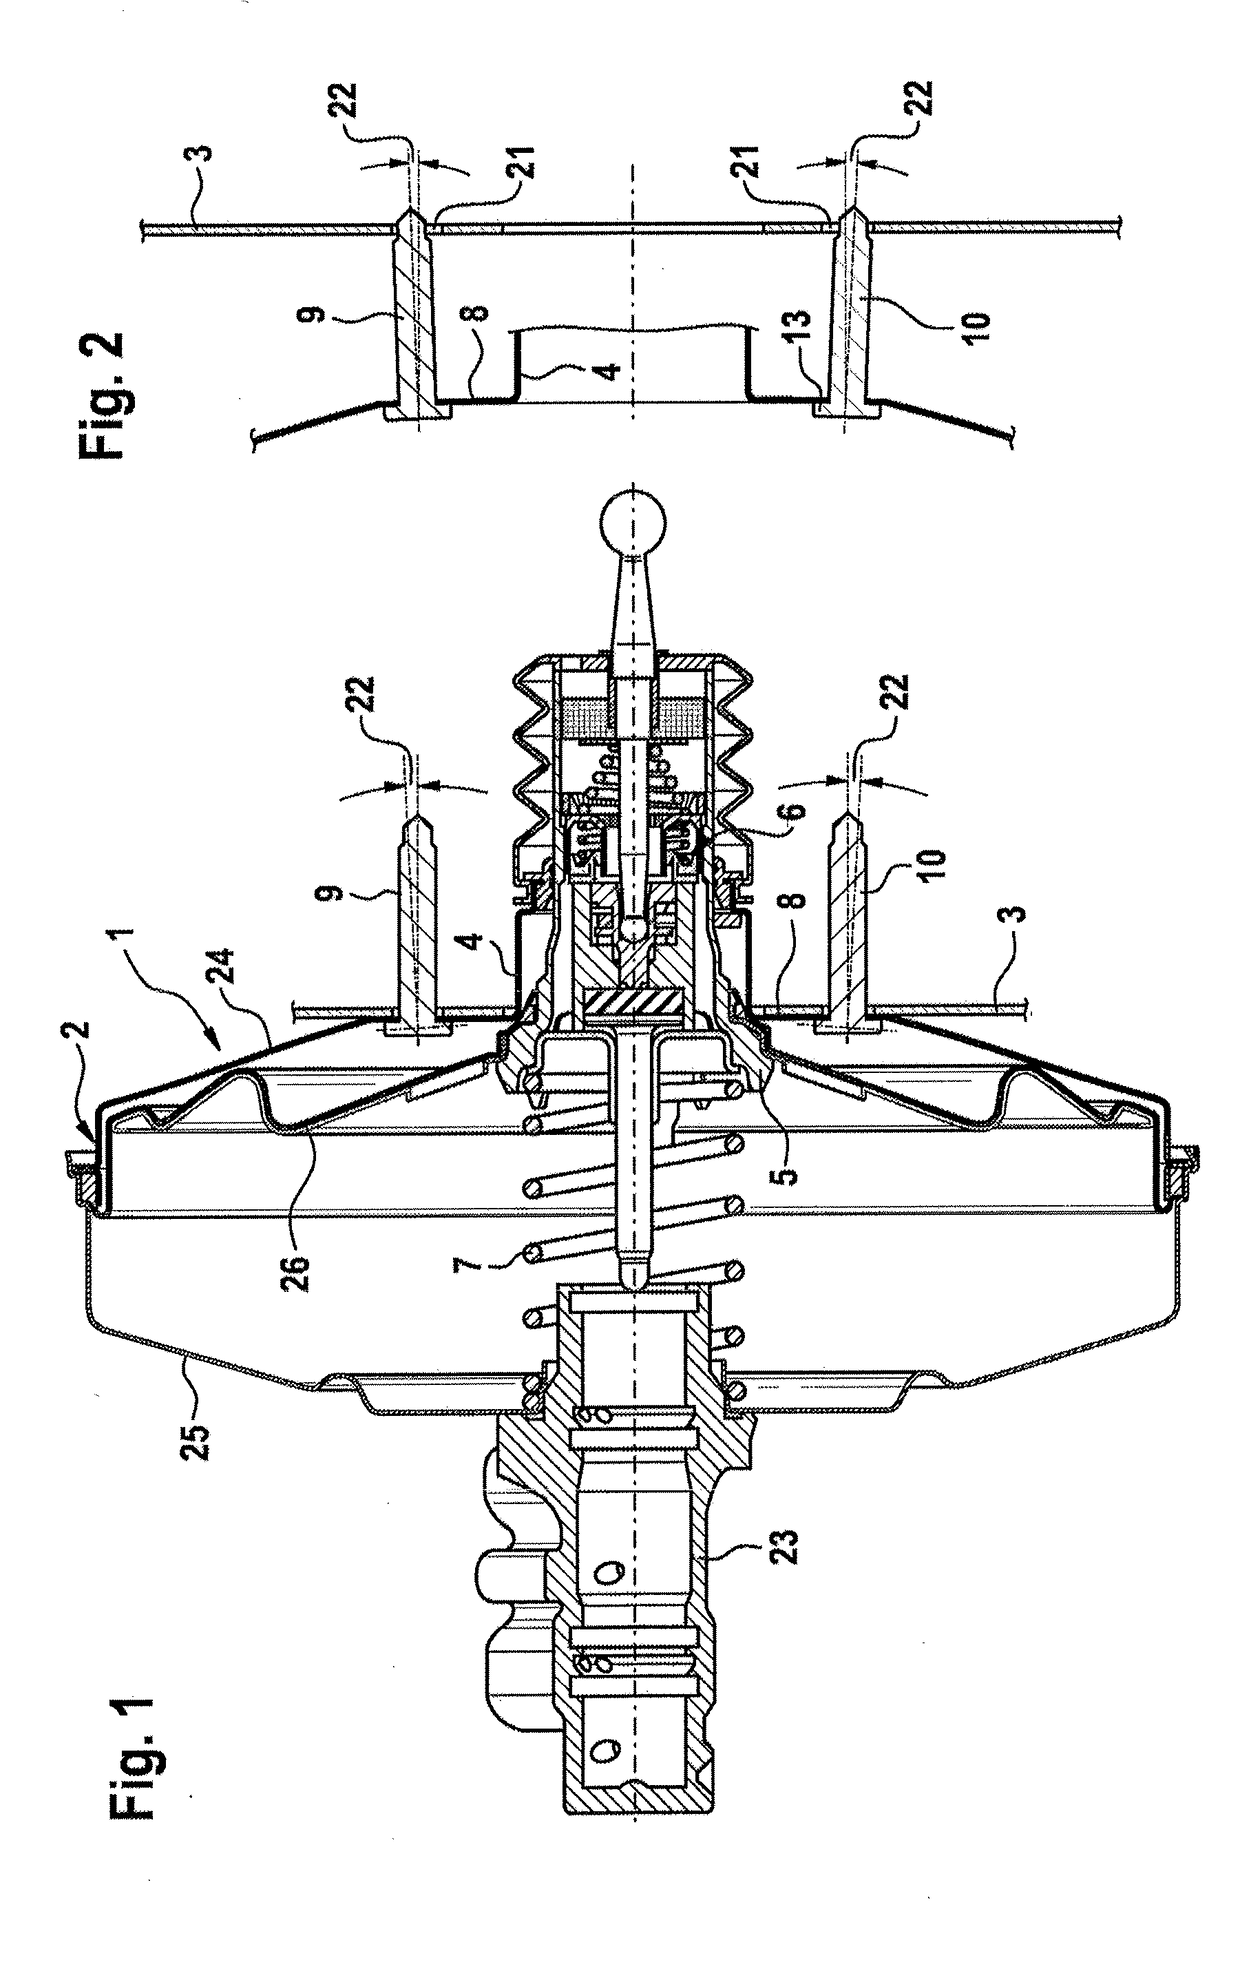 Pneumatic brake booster having a recessed bearing surface